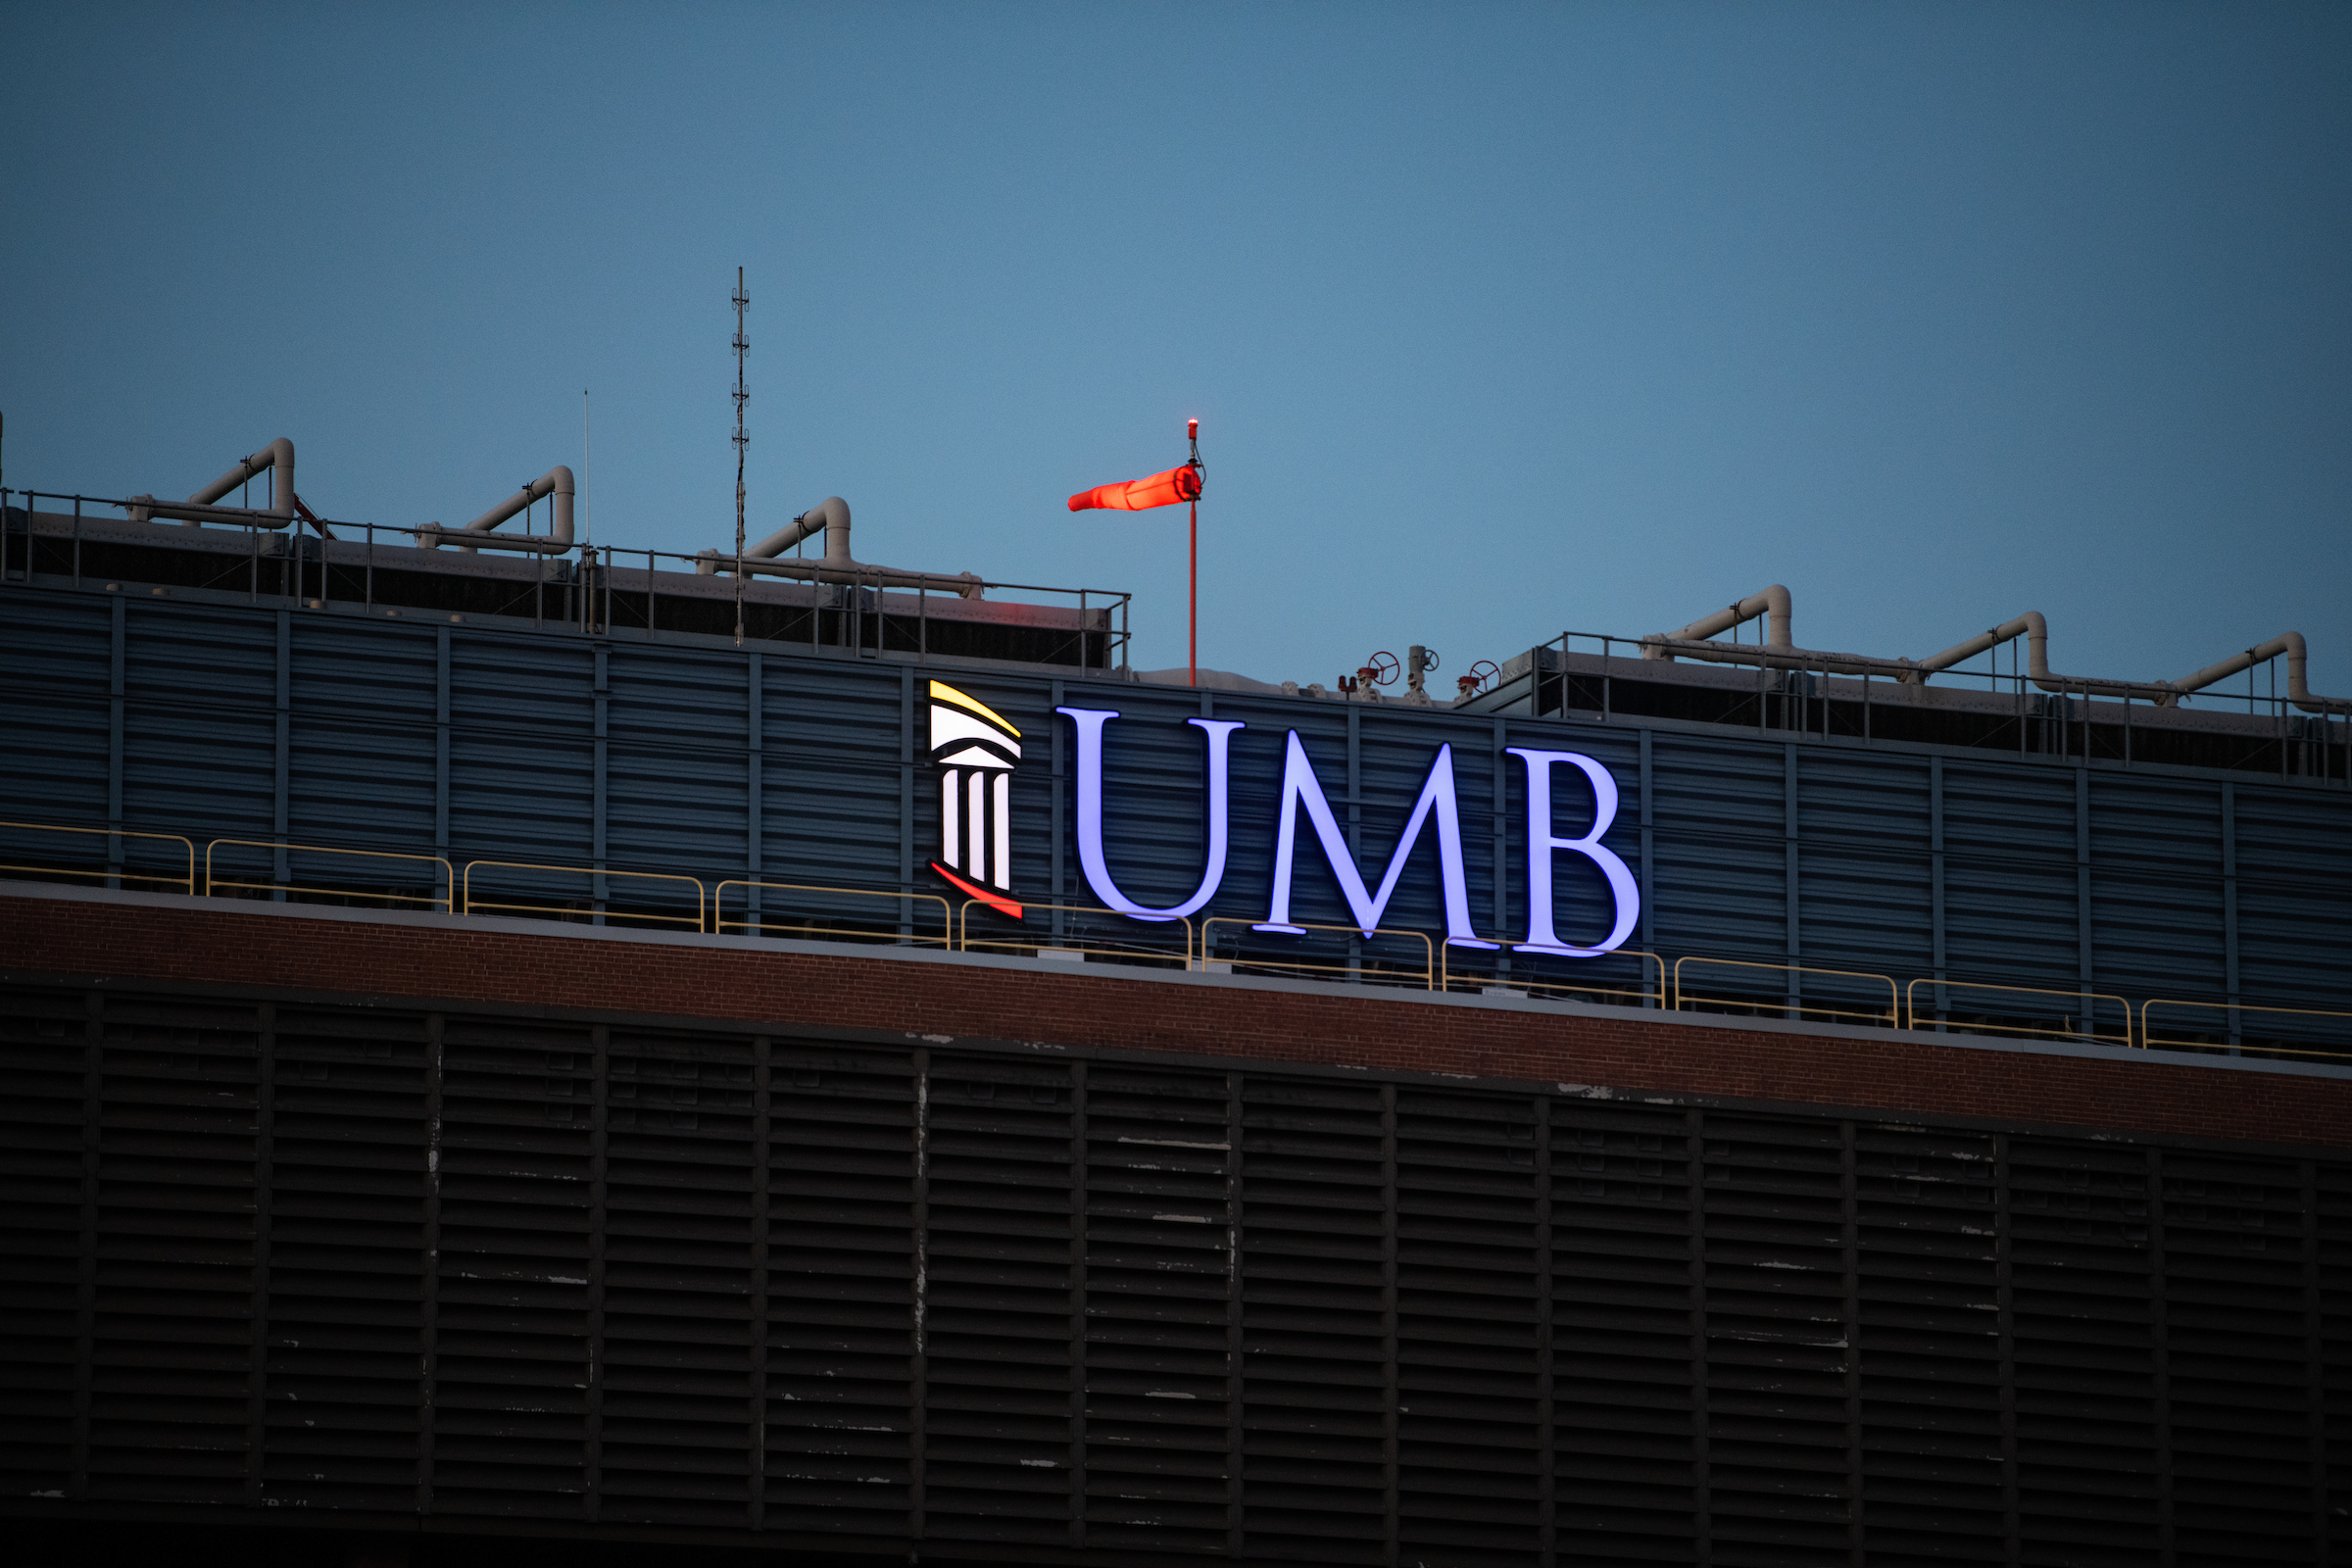 UMB sign lit in blue